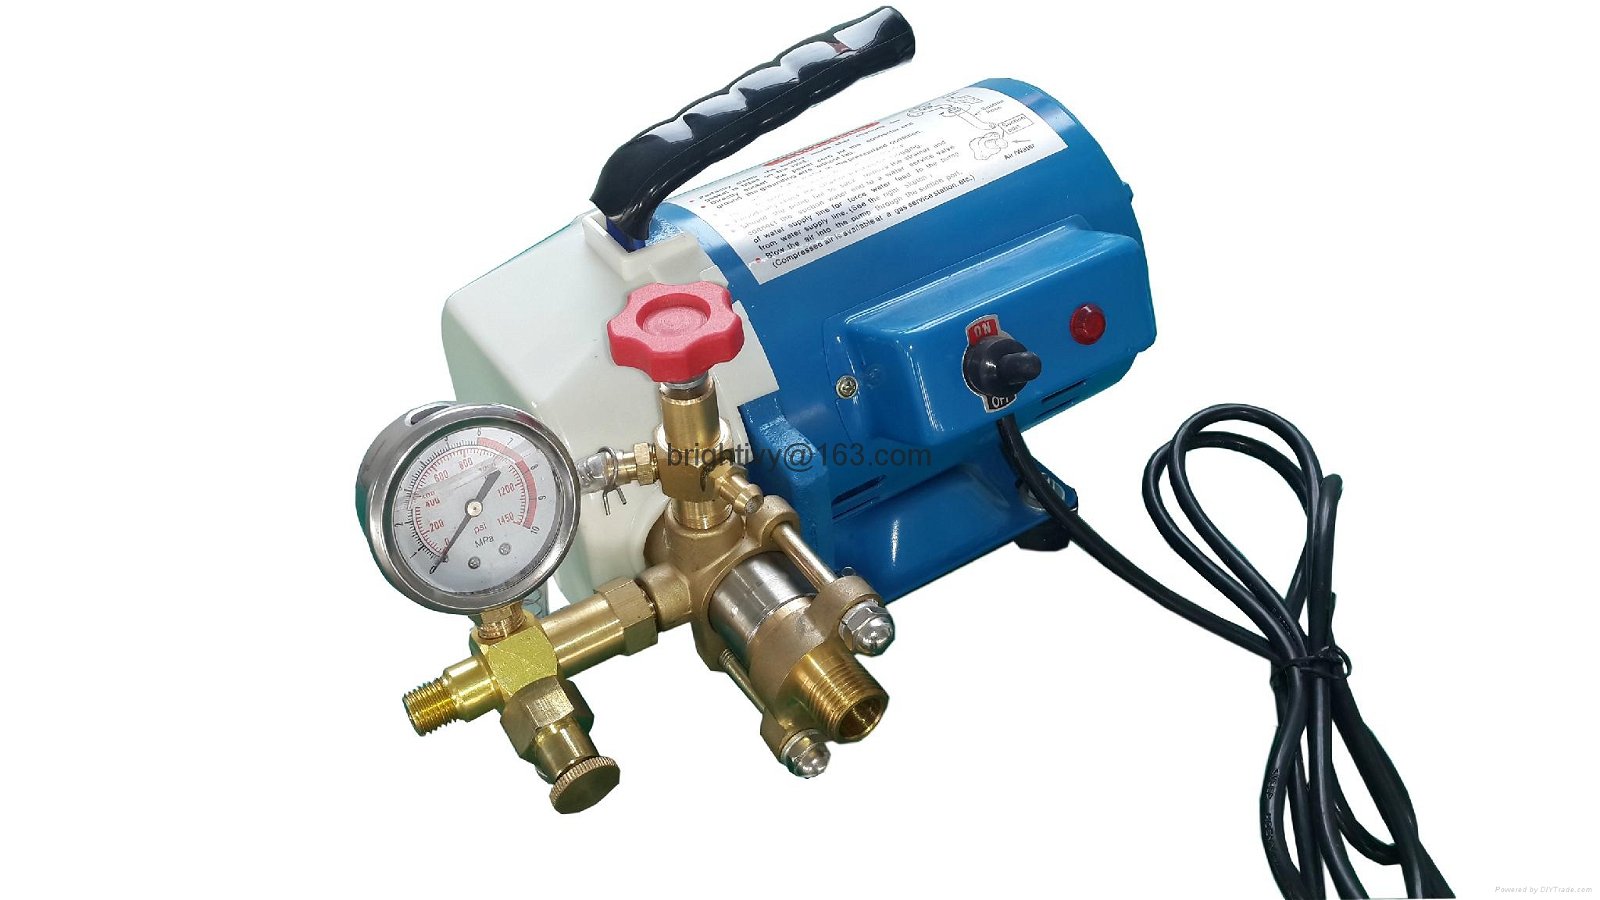 Electrical Hydraulic test pumpDSY-100